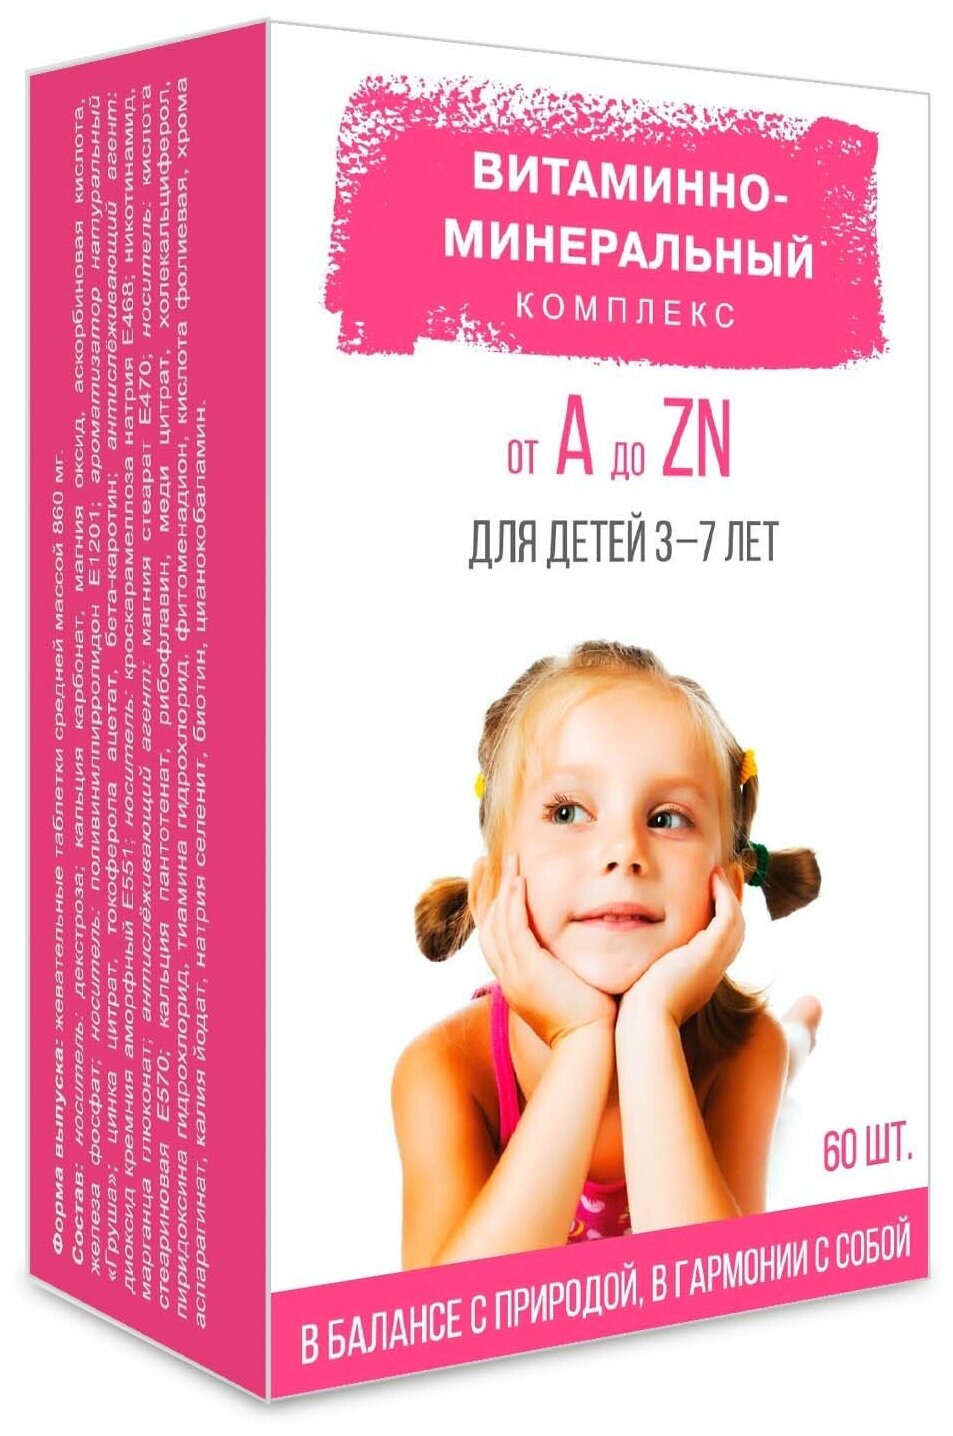 Витаминно-минеральный комплекс от А до Zn для детей 3-7 лет таб.